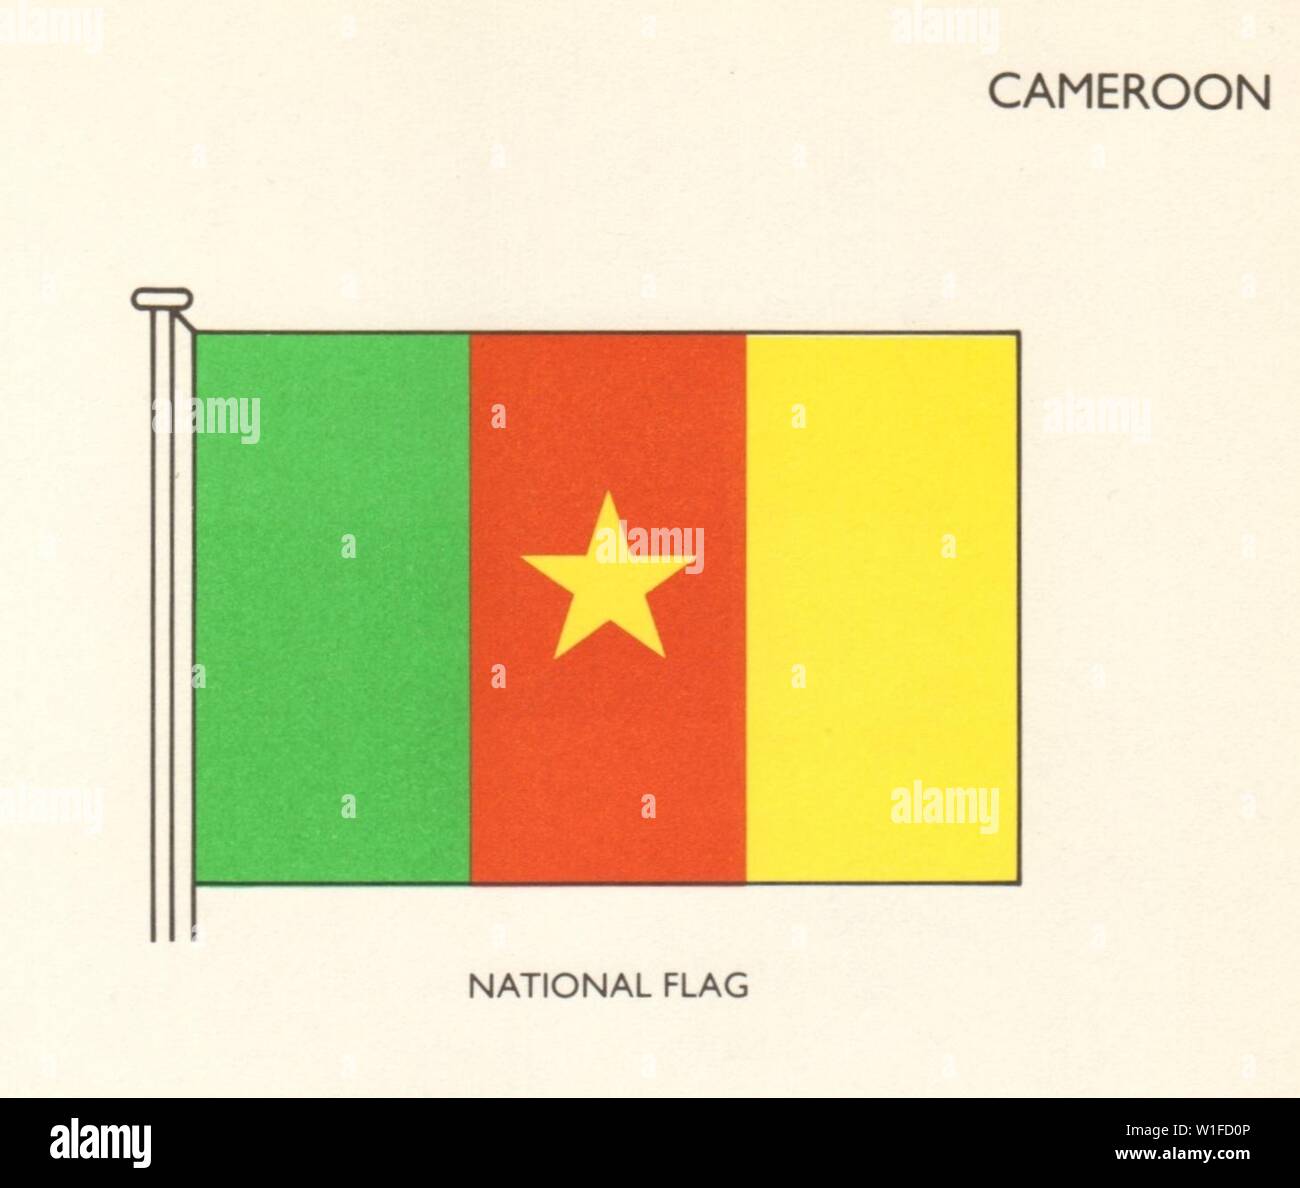 Kamerun Flaggen. Nationalflagge 1979 alte vintage Bild drucken Stockfoto